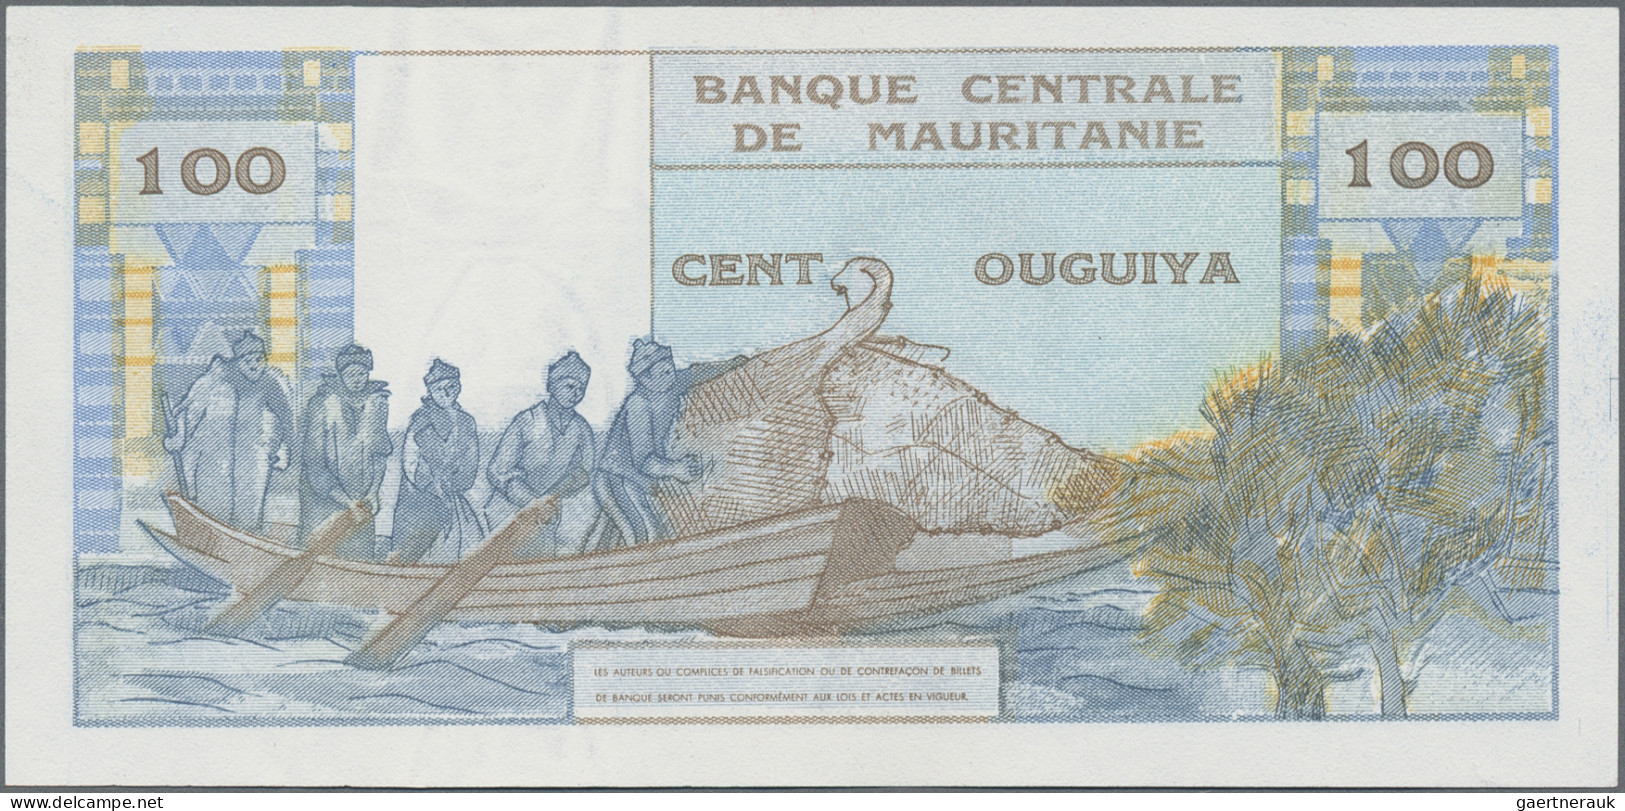 Mauritania: Banque Centrale De Mauritanie, 100 Ouguiya 1973, P.1 In Perfect UNC - Mauritanien